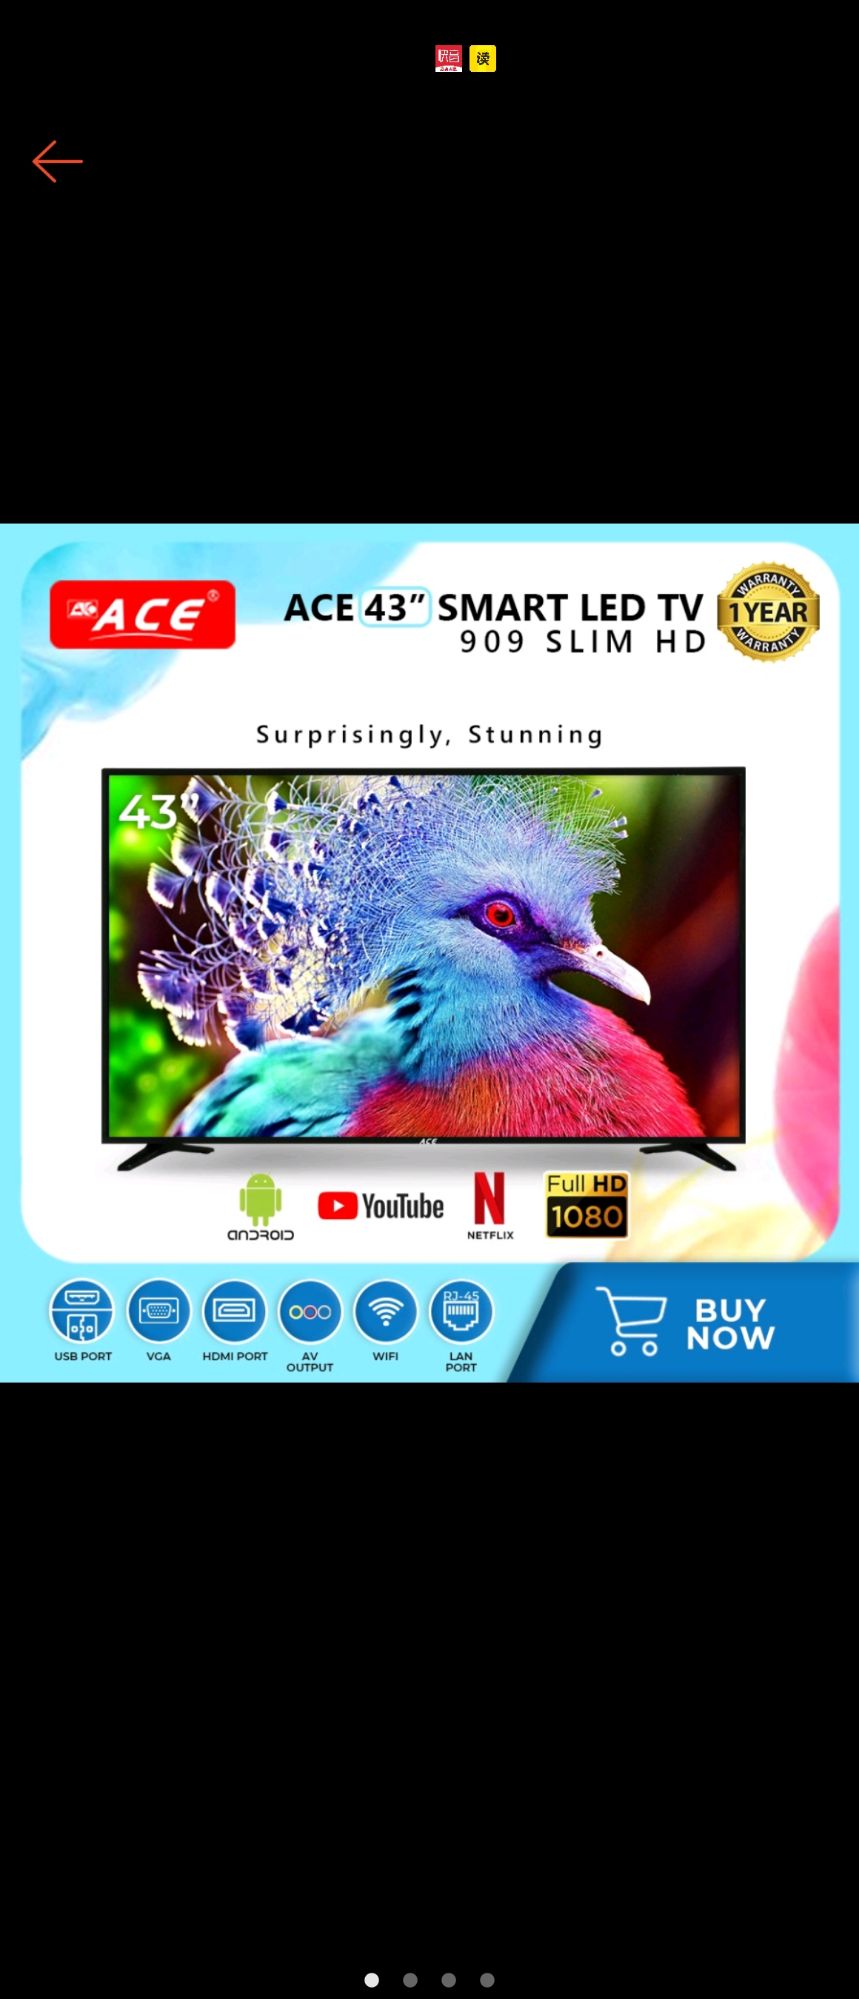 Ace 43" LED Smart TV with Free Bracket (Metro Manila)